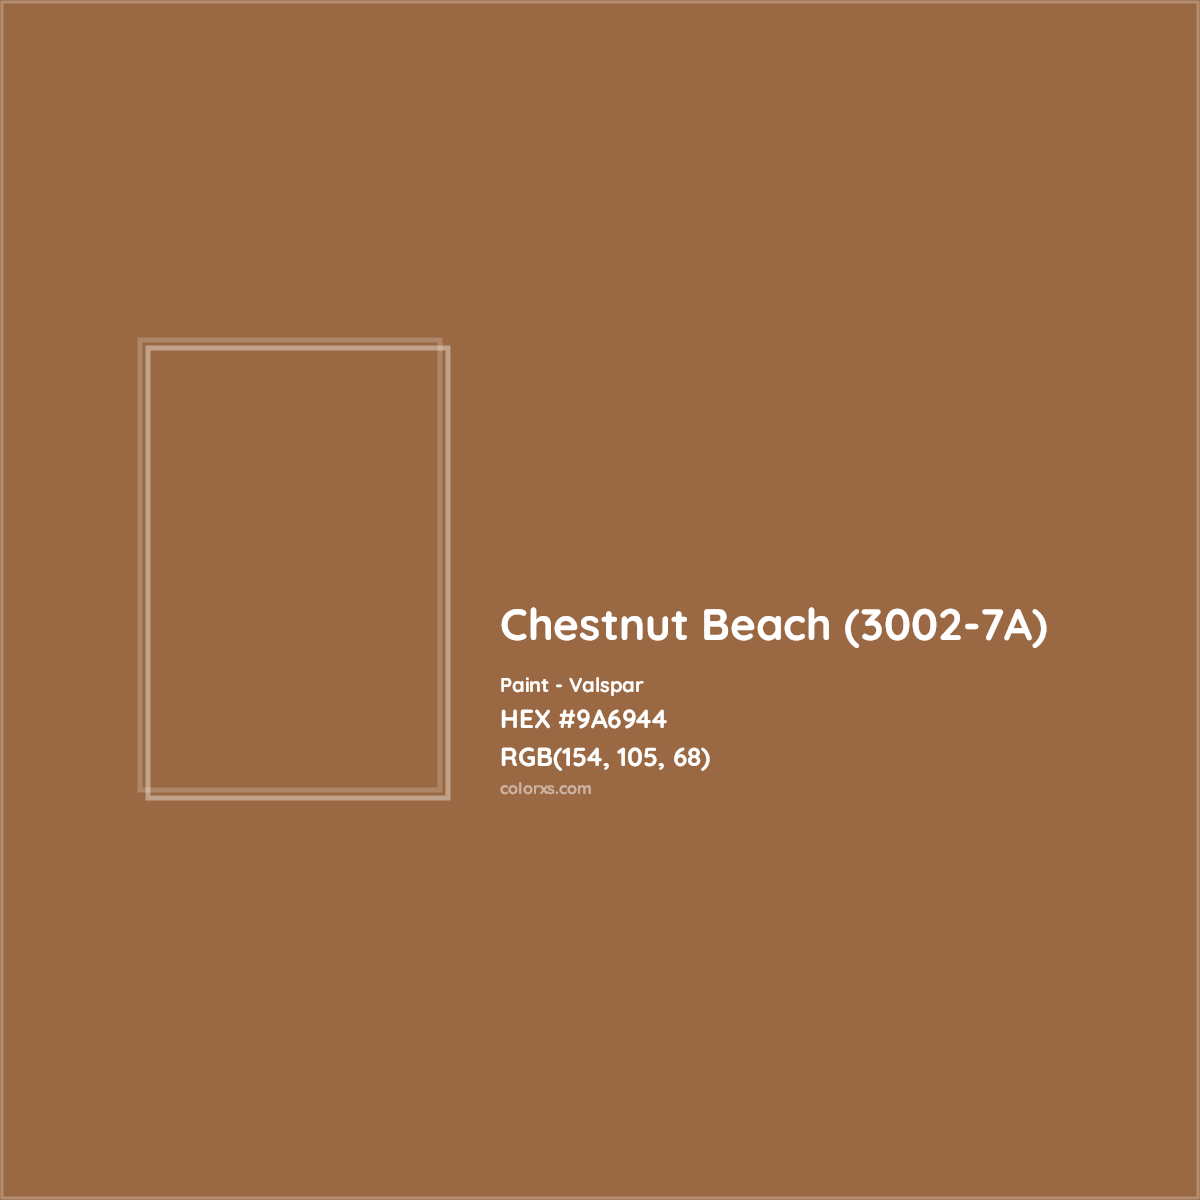 HEX #9A6944 Chestnut Beach (3002-7A) Paint Valspar - Color Code